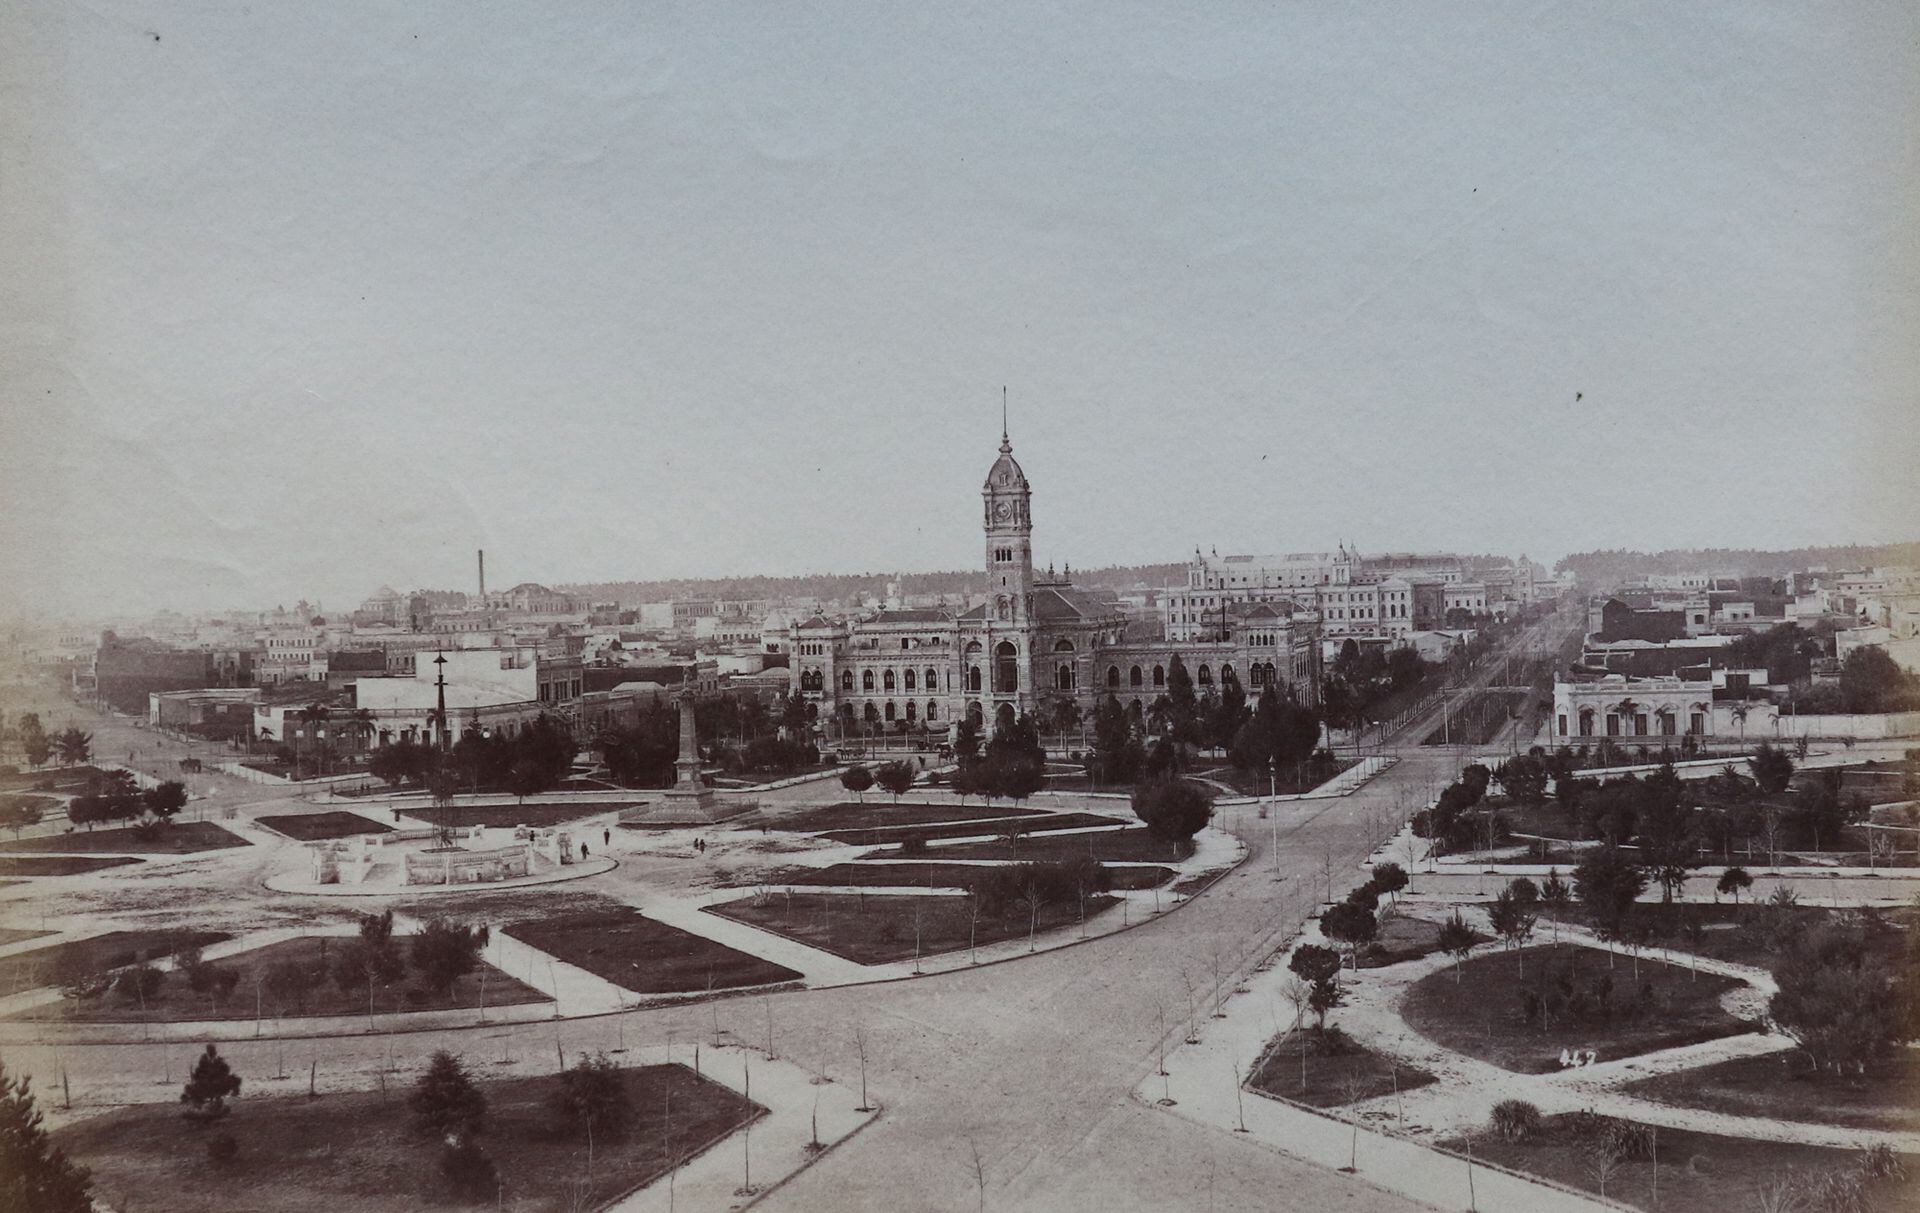 Vista general de La Plata en sus inicios, Plaza Moreno y Palacio Municipal.